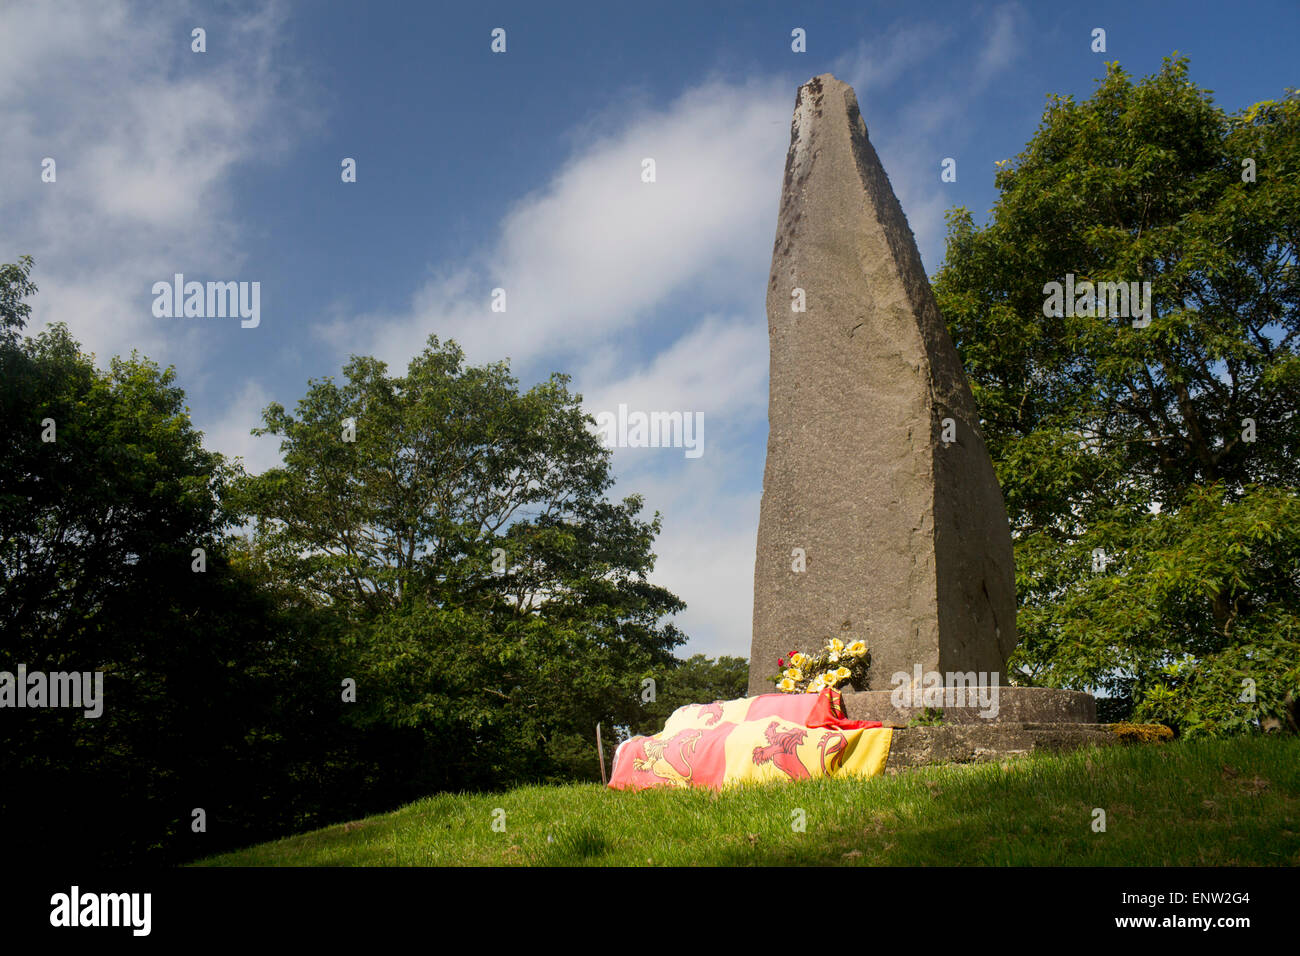 Cilmeri Cilmery Denkmal für walisischen Fürsten Llywelyn ap Gruffydd aka Llywelyn das letzte nahe dem Aufstellungsort in 1282 Powys Mi getötet wurde Stockfoto